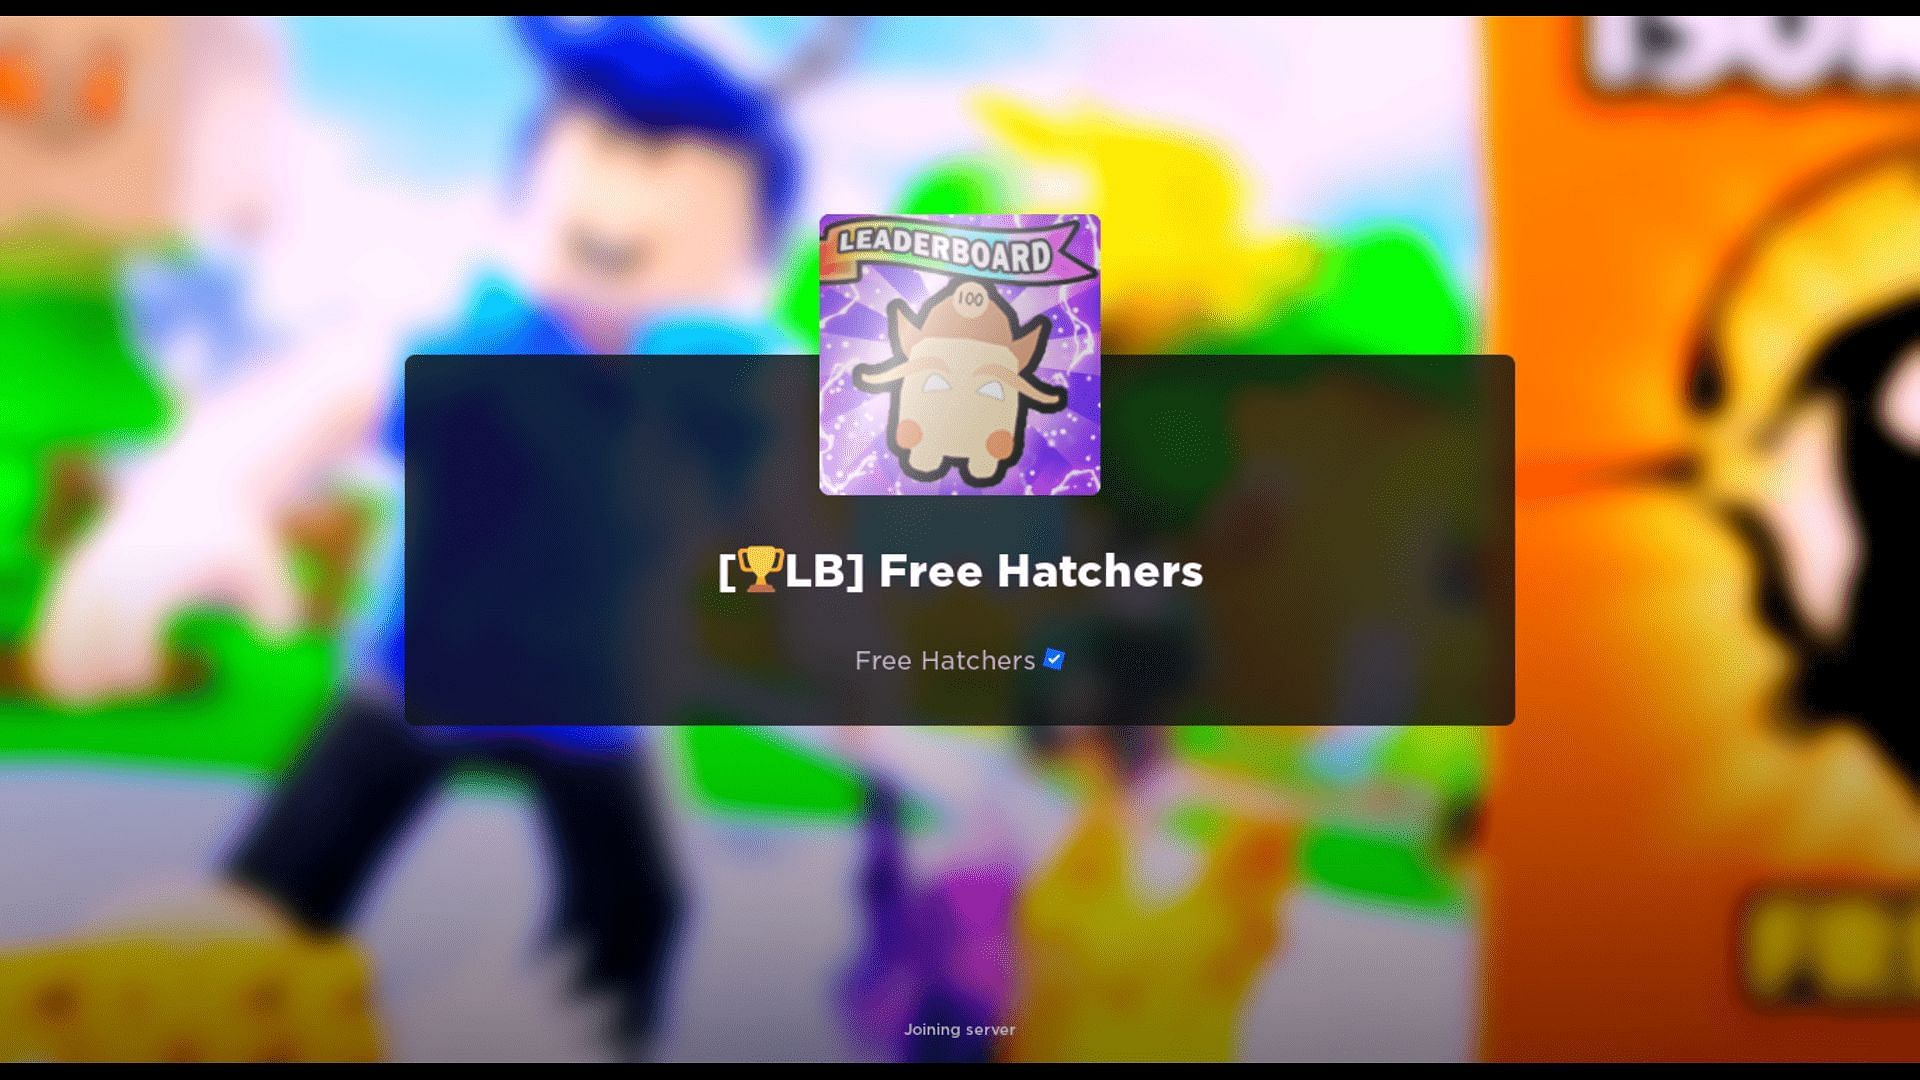 Free Hatchers codes